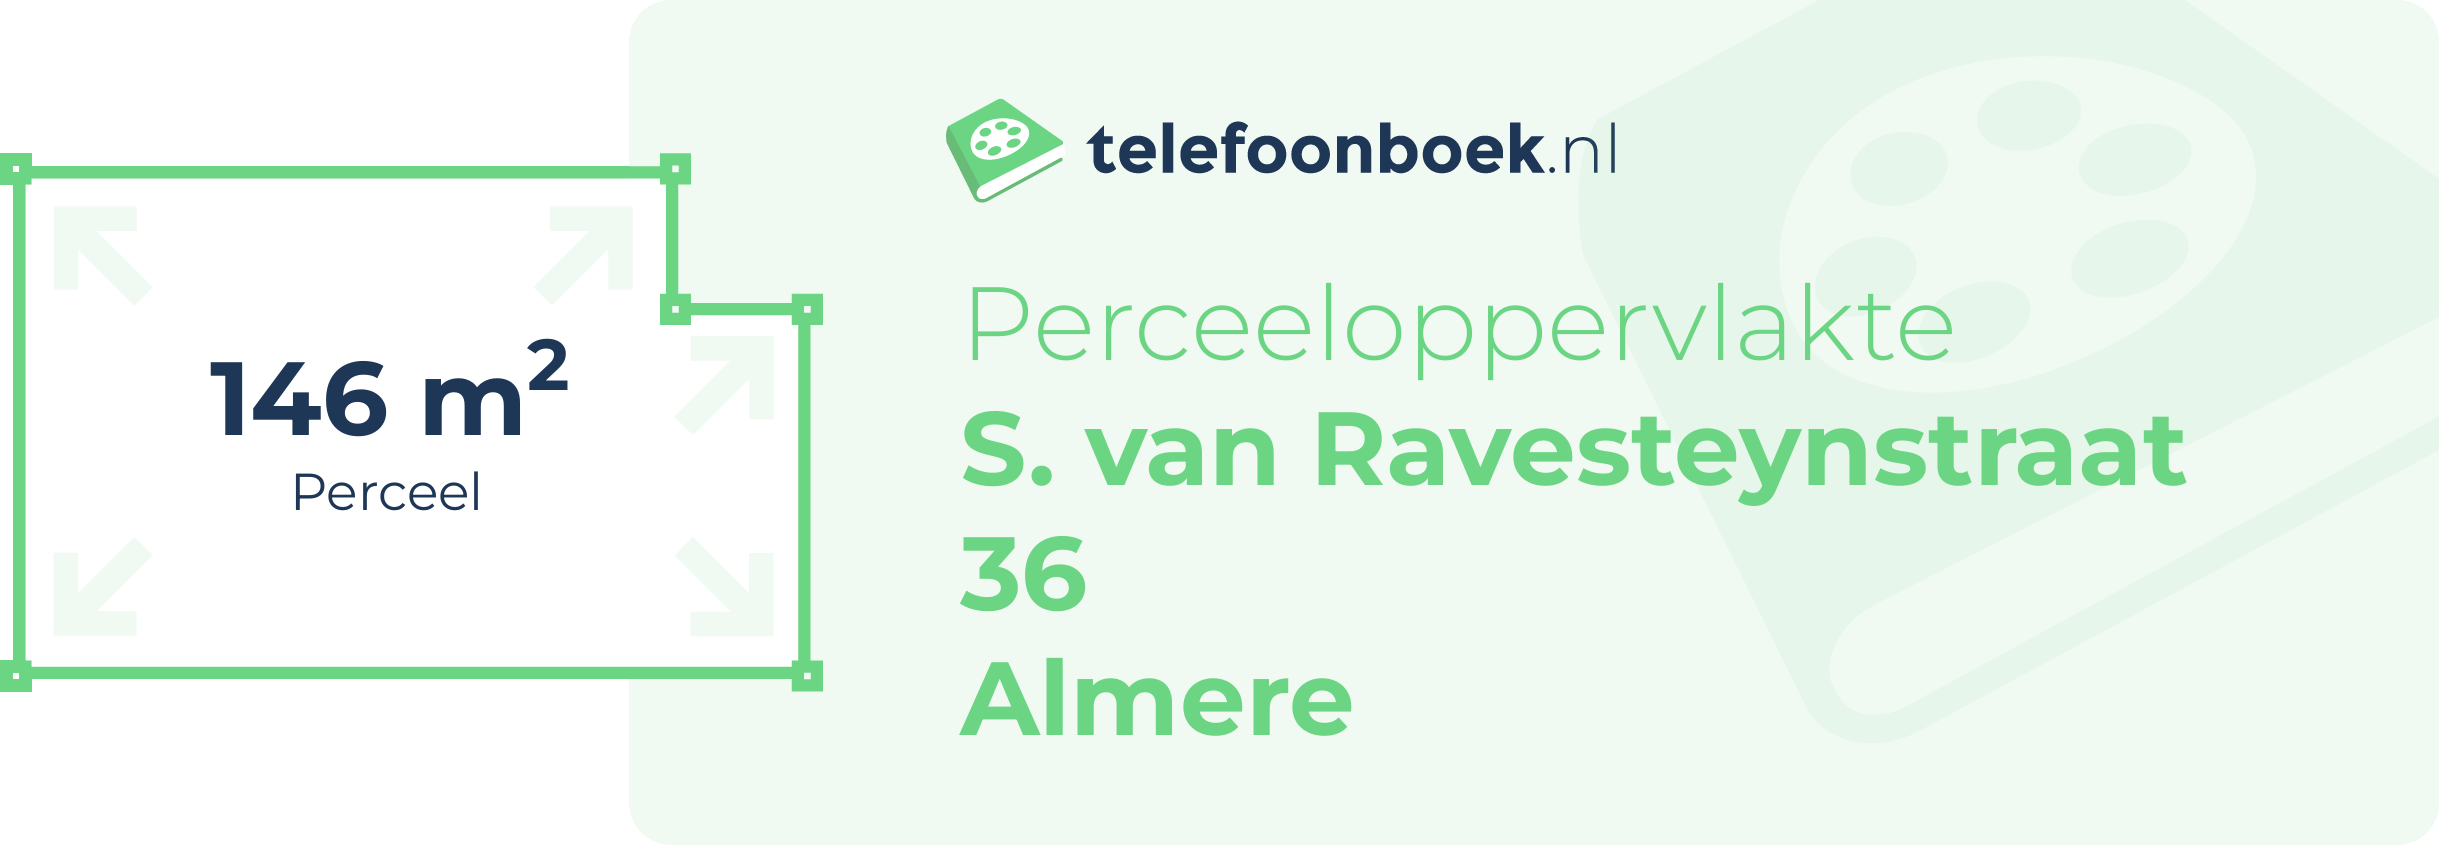 Perceeloppervlakte S. Van Ravesteynstraat 36 Almere